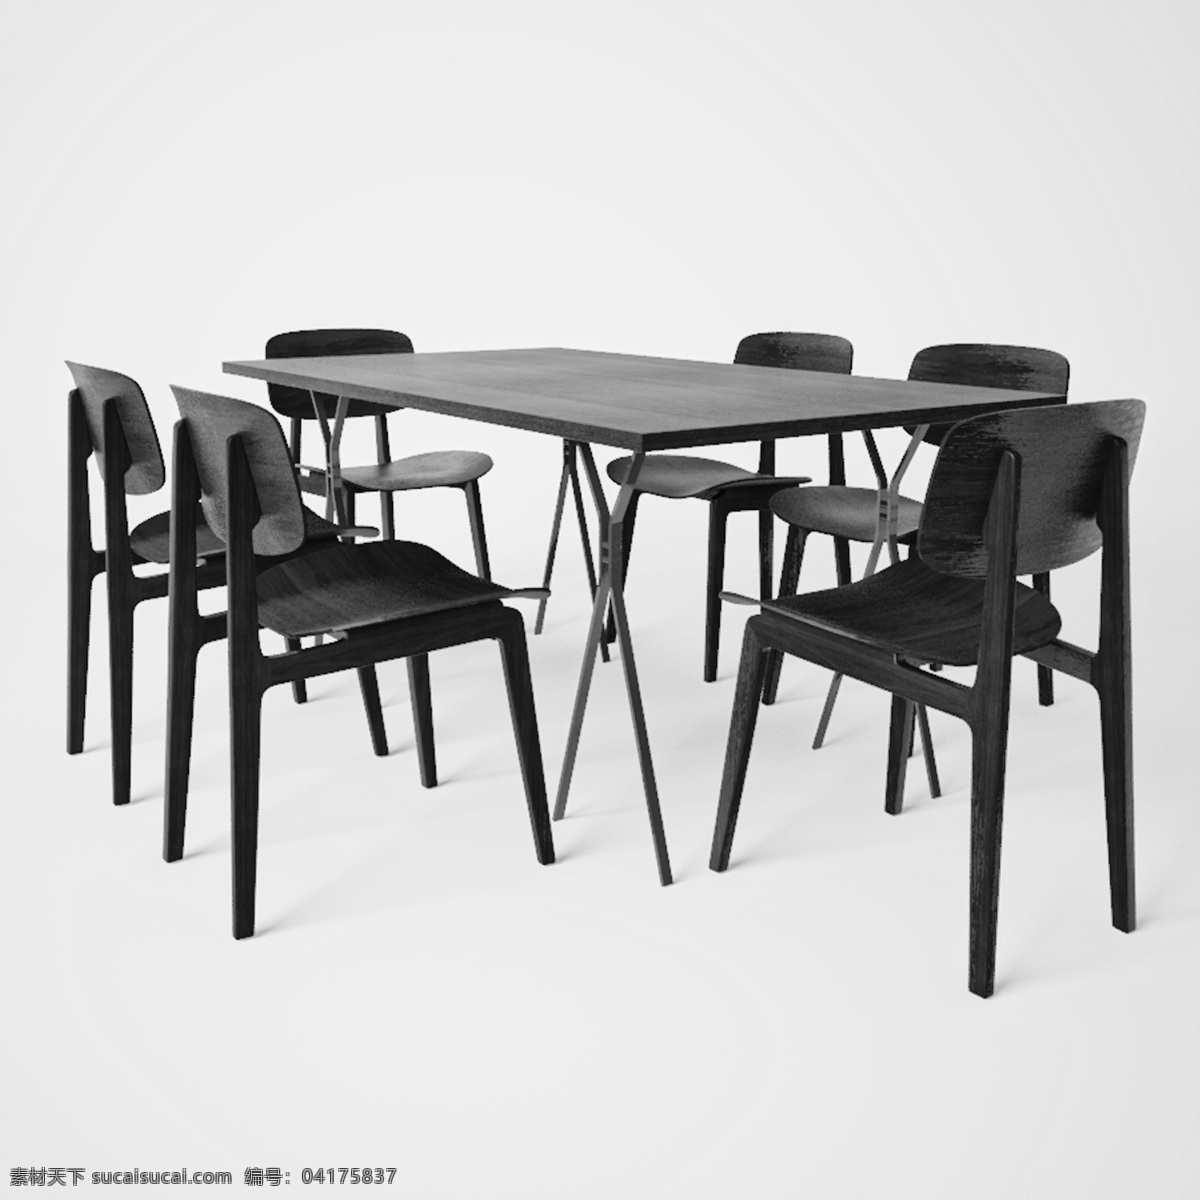 白色 简约 条纹 餐桌 模型 白色桌椅 时尚餐桌 餐厅 3d模型 模型素材